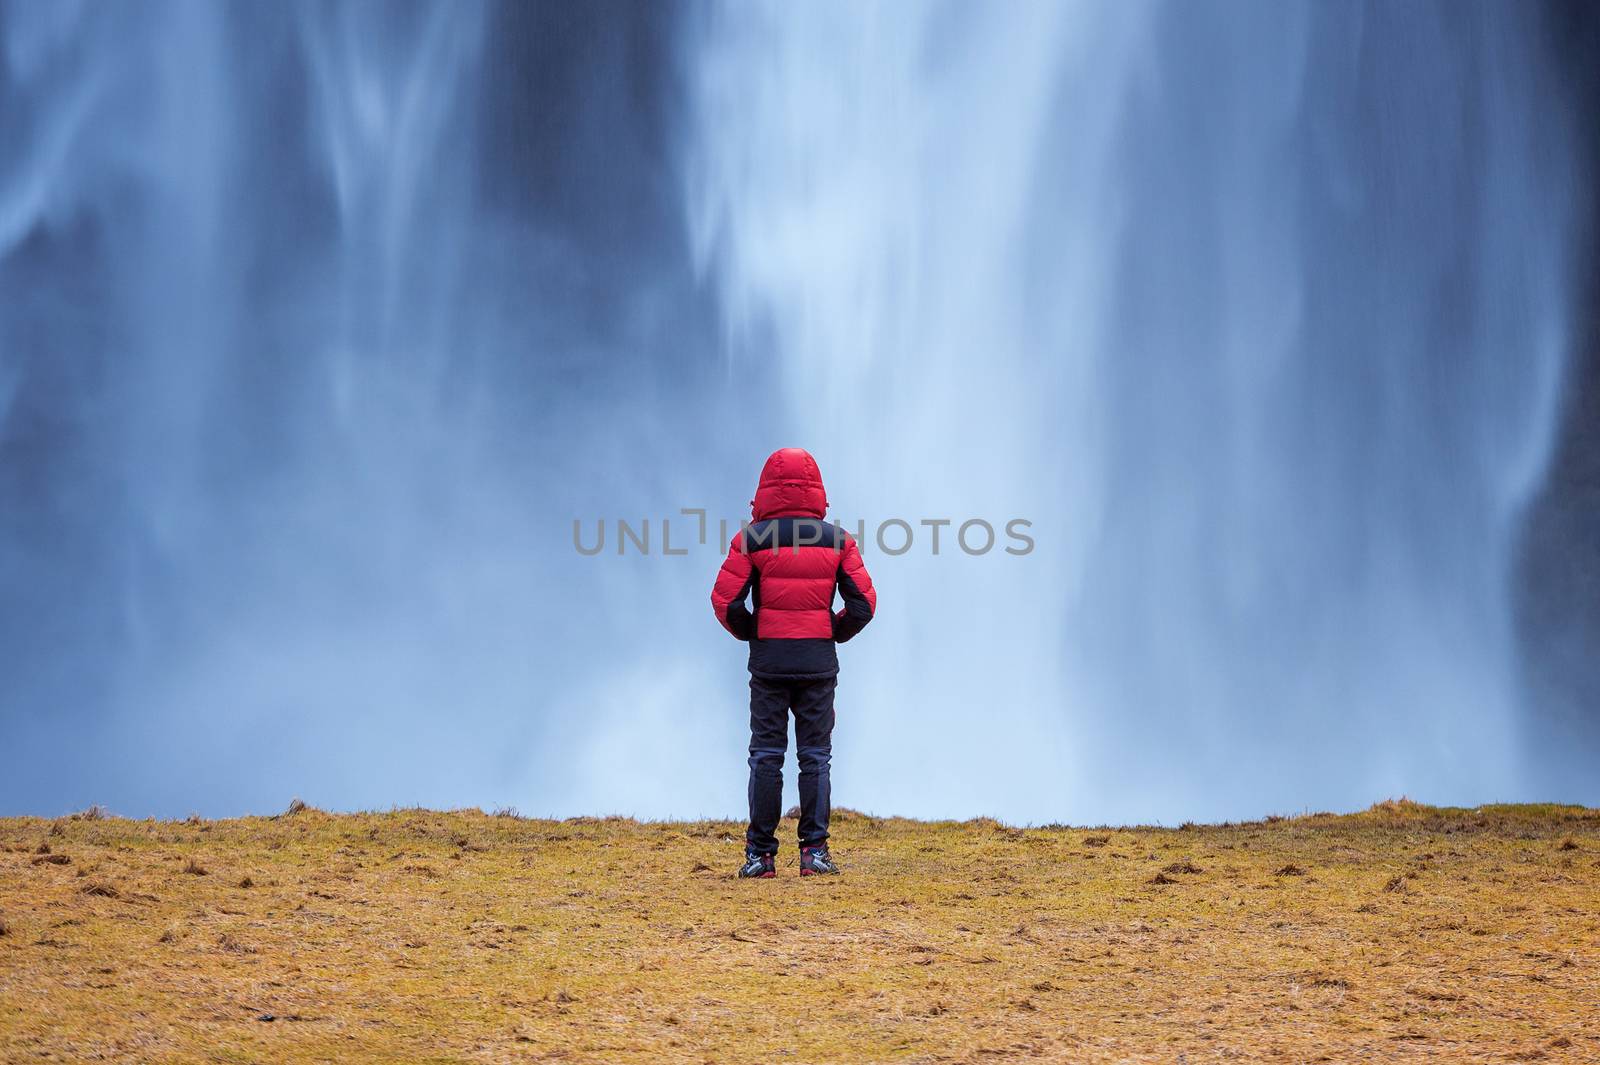 Seljalandsfoss waterfall in Iceland. Guy in red jacket looks at Seljalandsfoss waterfall.